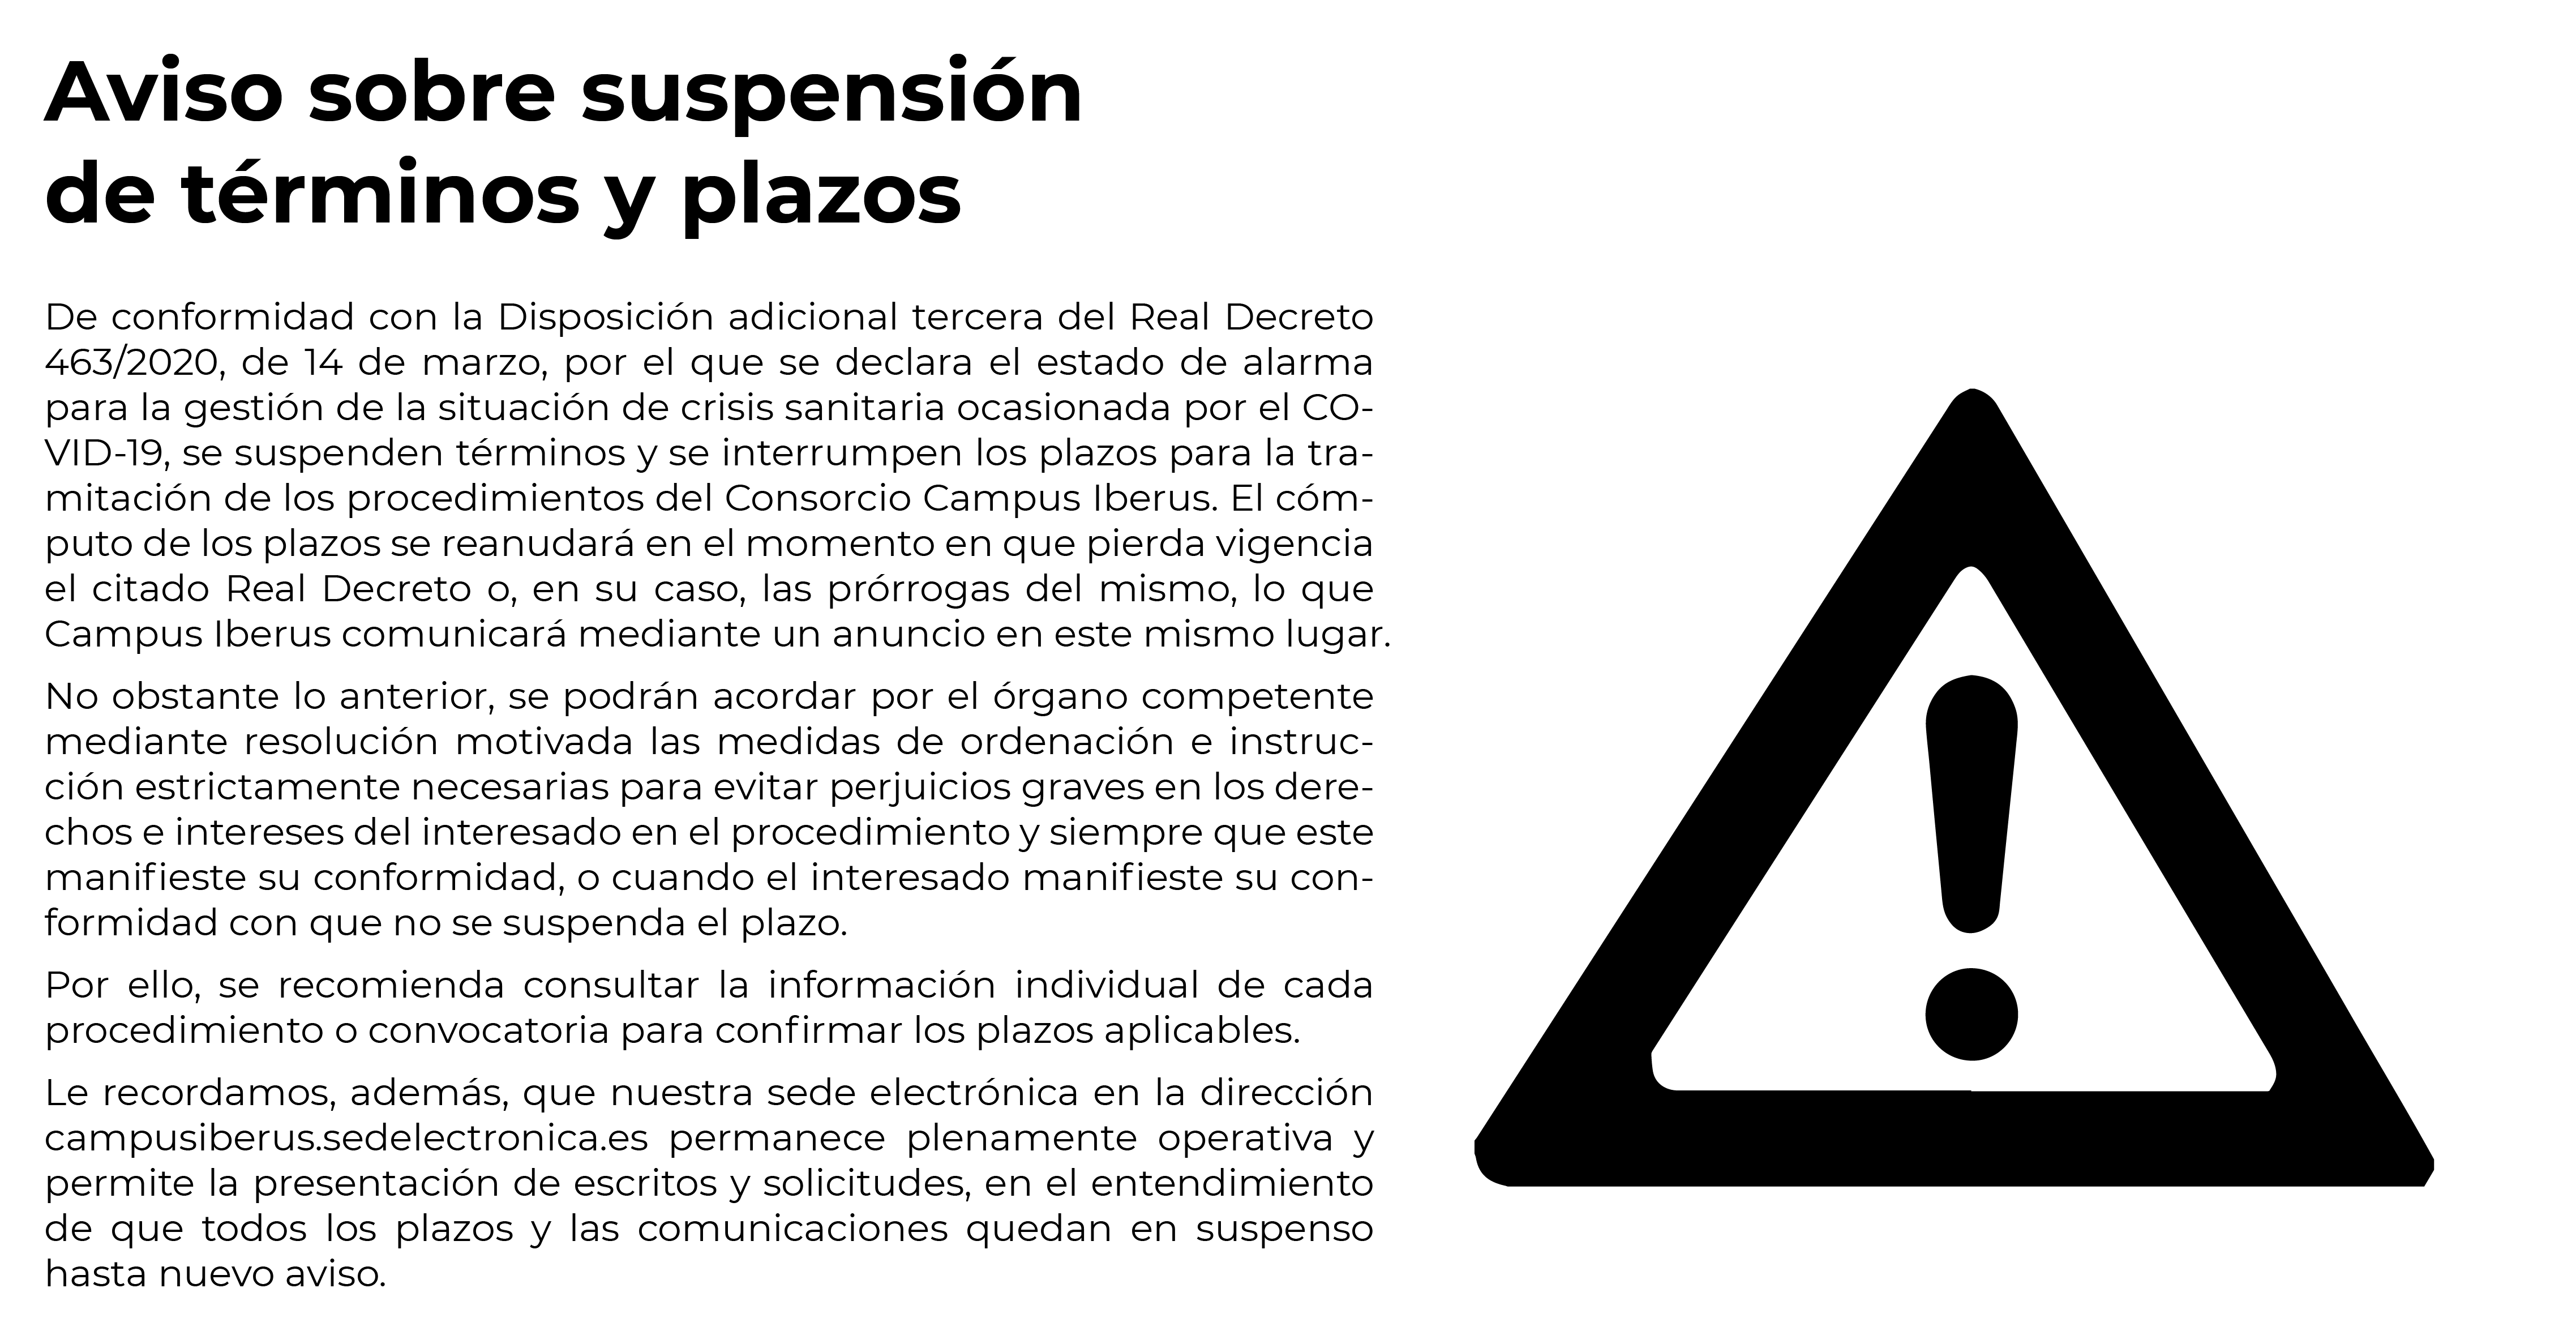 https://www.campusiberus.es/aviso-sobre-suspension-de-terminos-y-plazos/